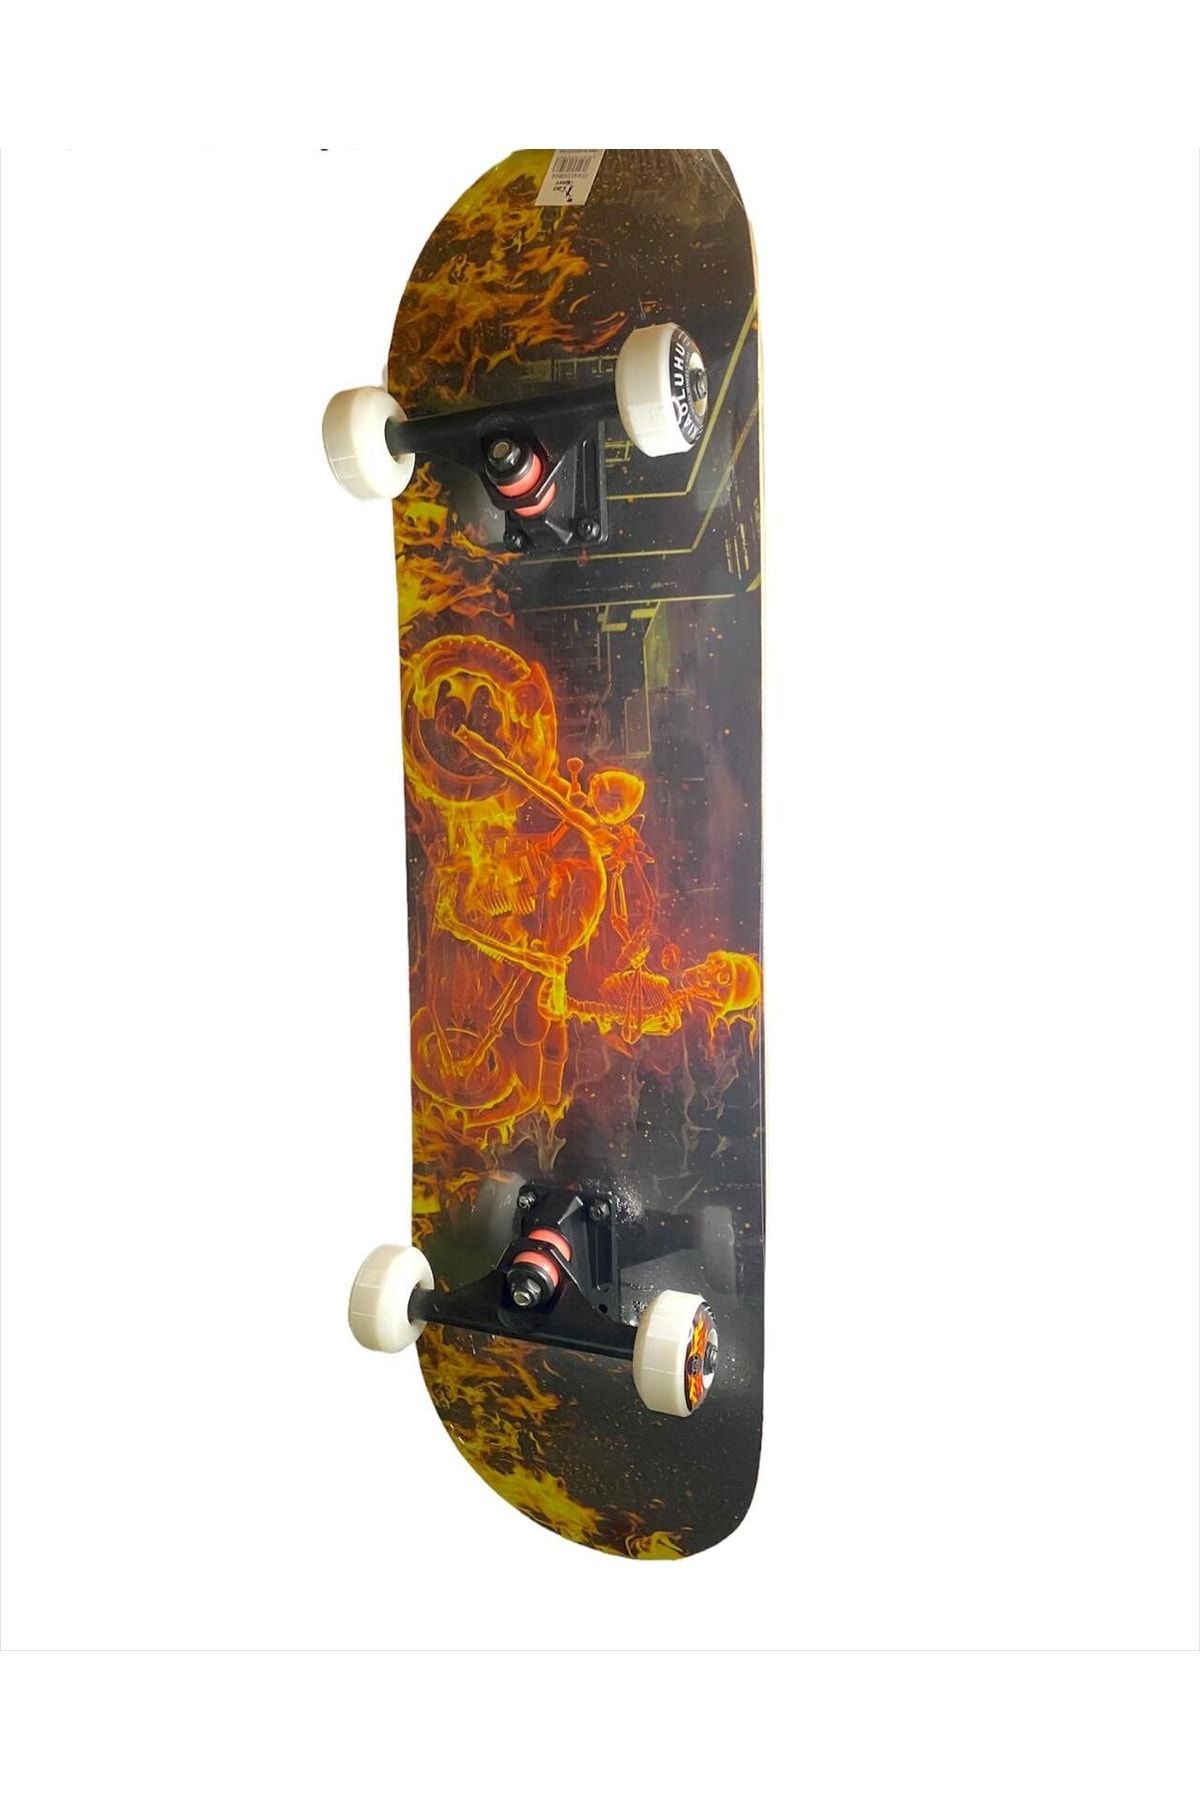 Genel Markalar Tek Ebat Yeni Nesil Pro Kemik Tekerli Zımparalı Abec 7 Kaykay 3108 Beyaz Skateboard